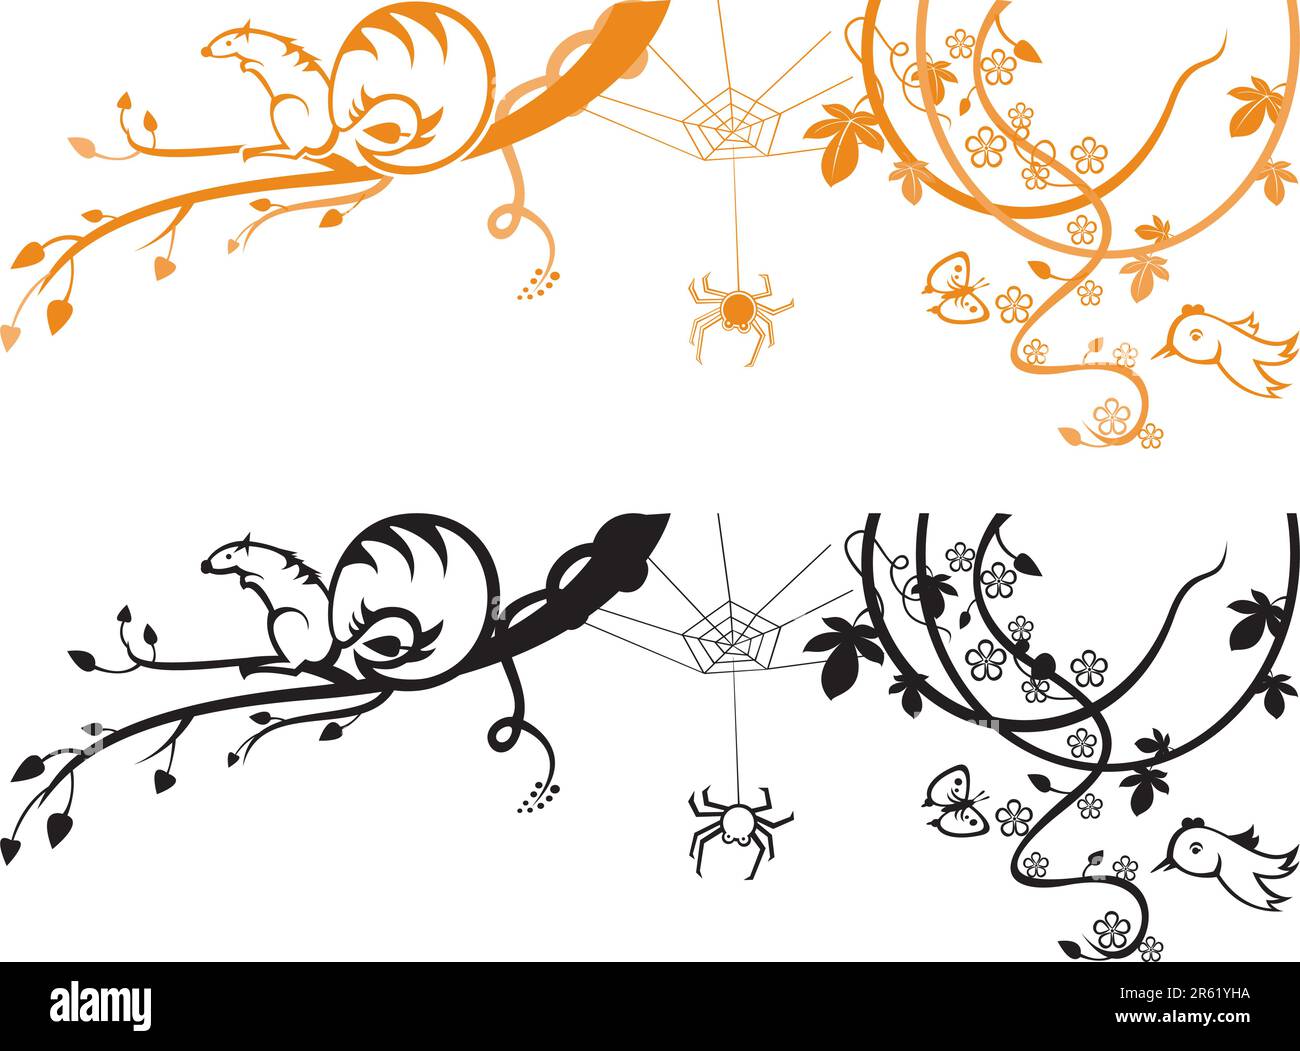 Un arrière-plan illustré avec un motif floral abstrait d'une araignée, d'écureuil et d'oiseaux sur un arbre. Illustration de Vecteur